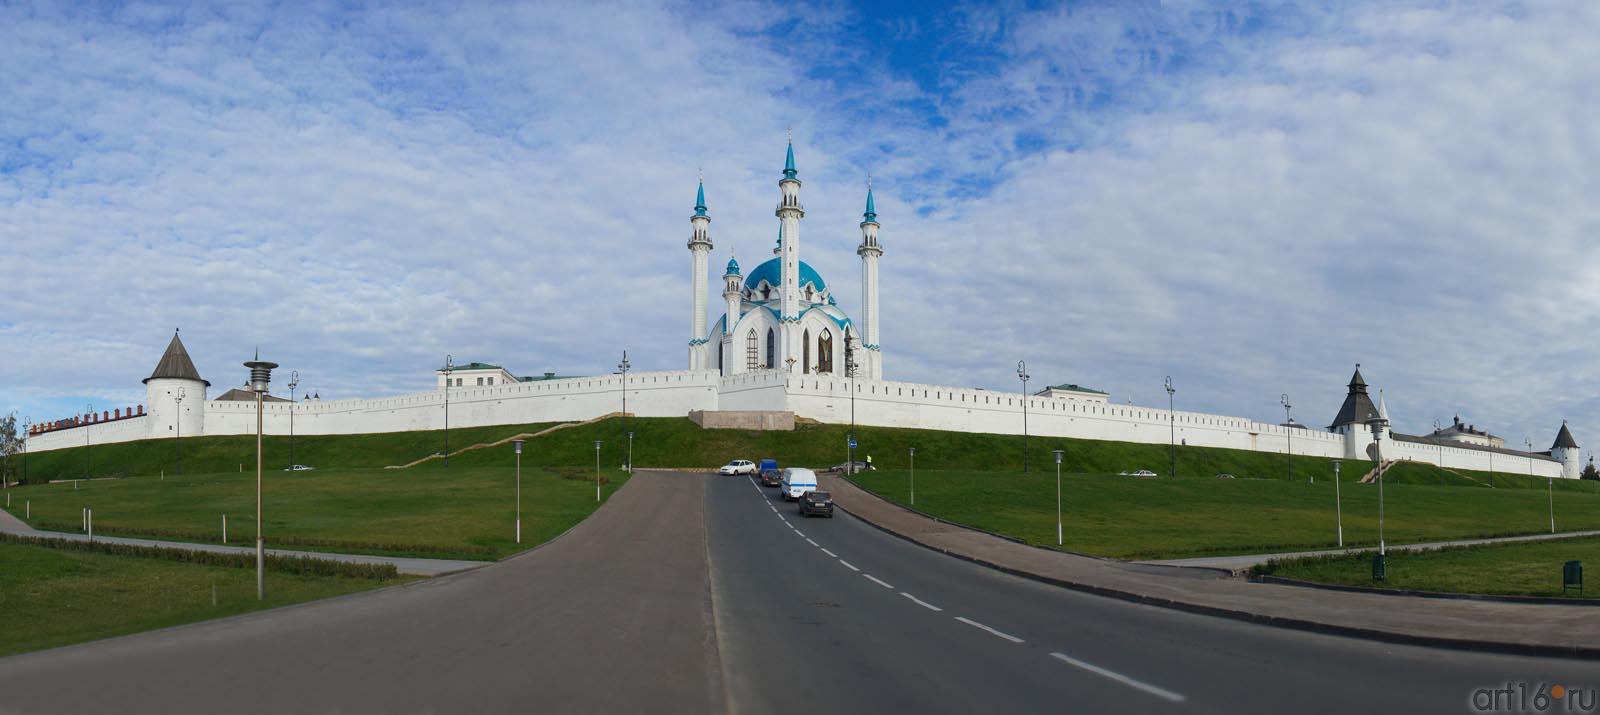 Панорама Казанского кремля с мечетью Кул Шариф::Избратое